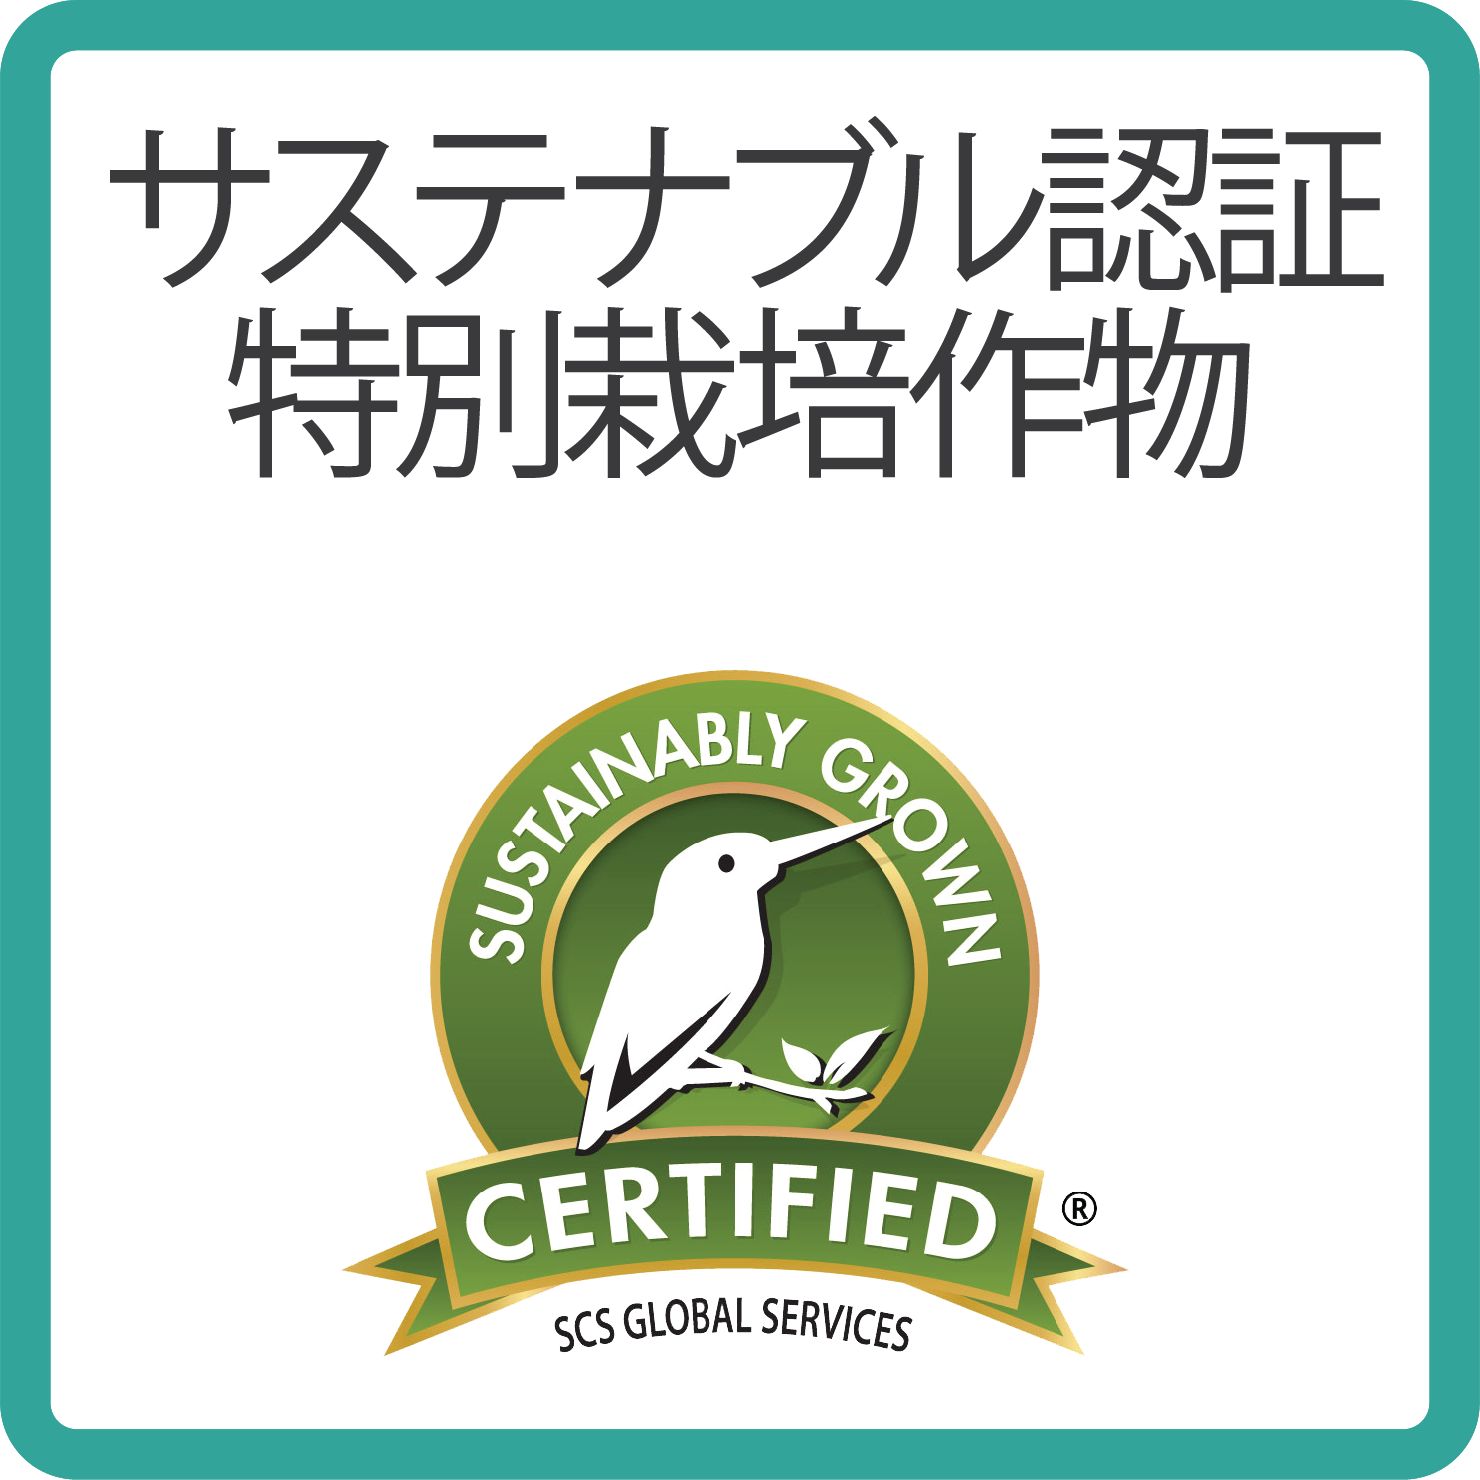 Sustainability sustainably grown_BORDER_japanese